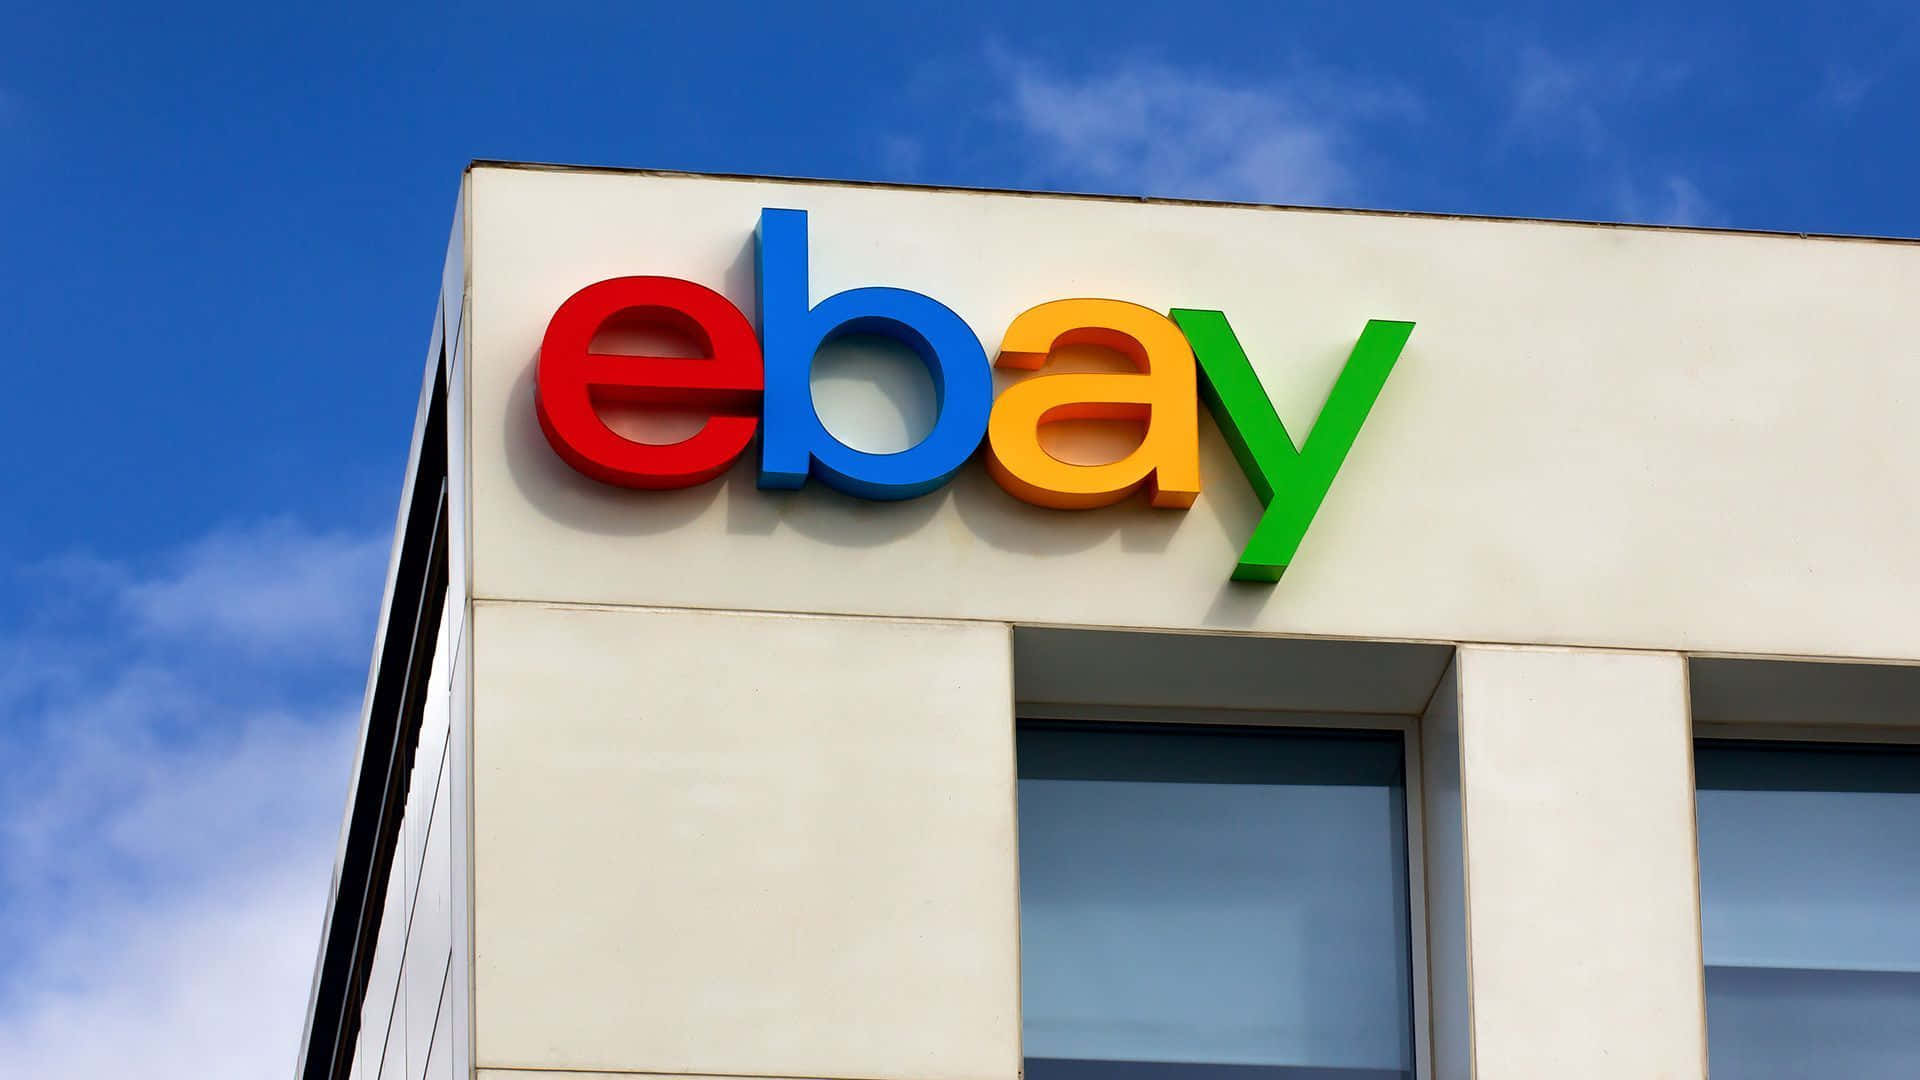 Logotipode Ebay En El Lateral De Un Edificio